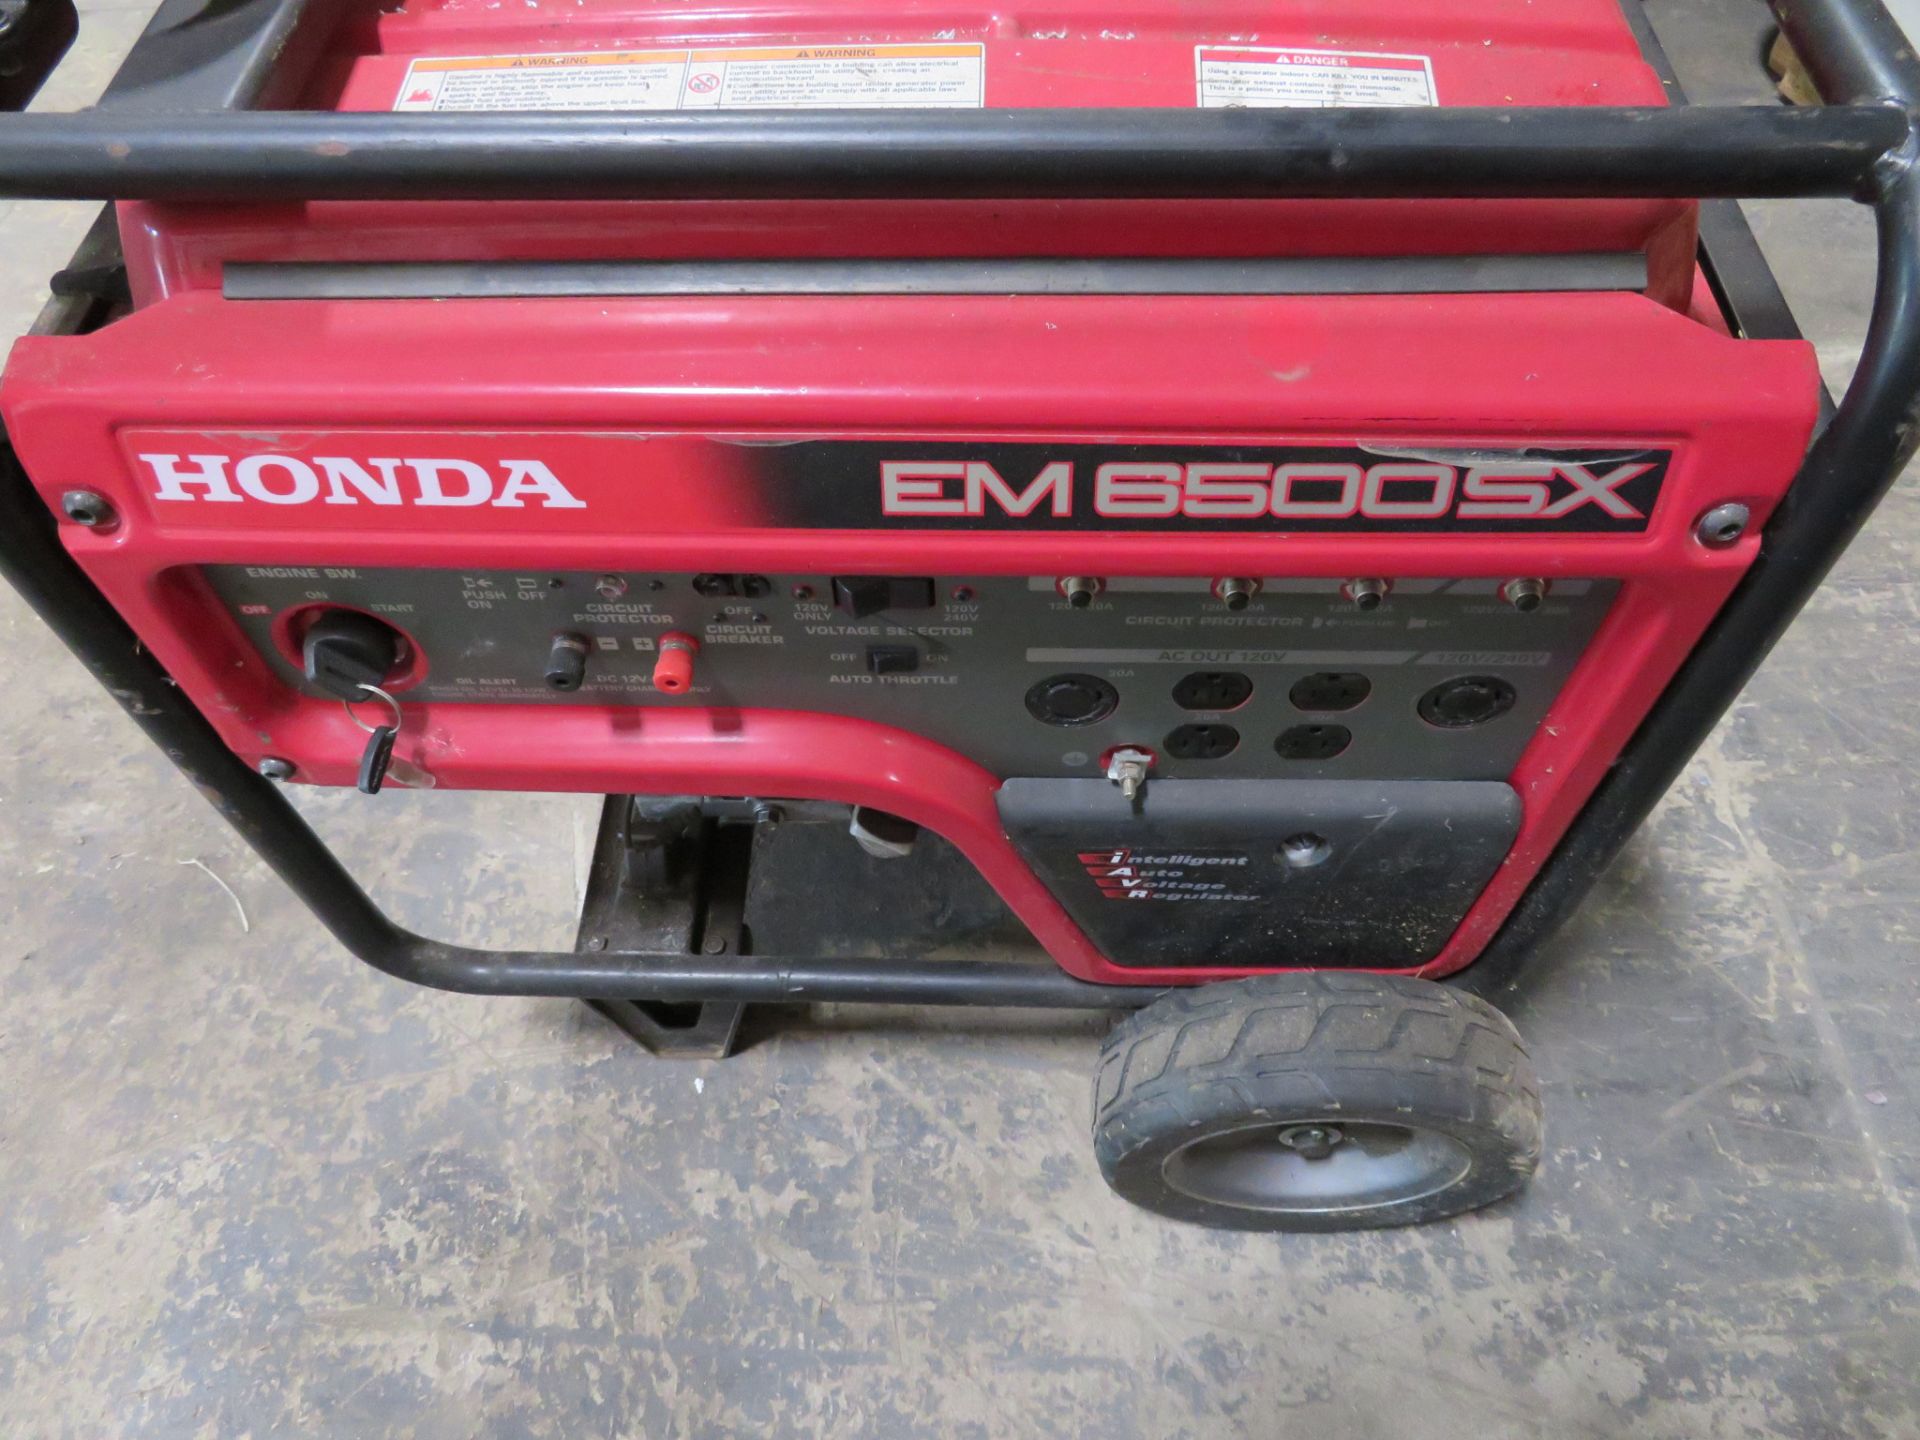 Honda #EM6500SX Gas Powered Portable Generator